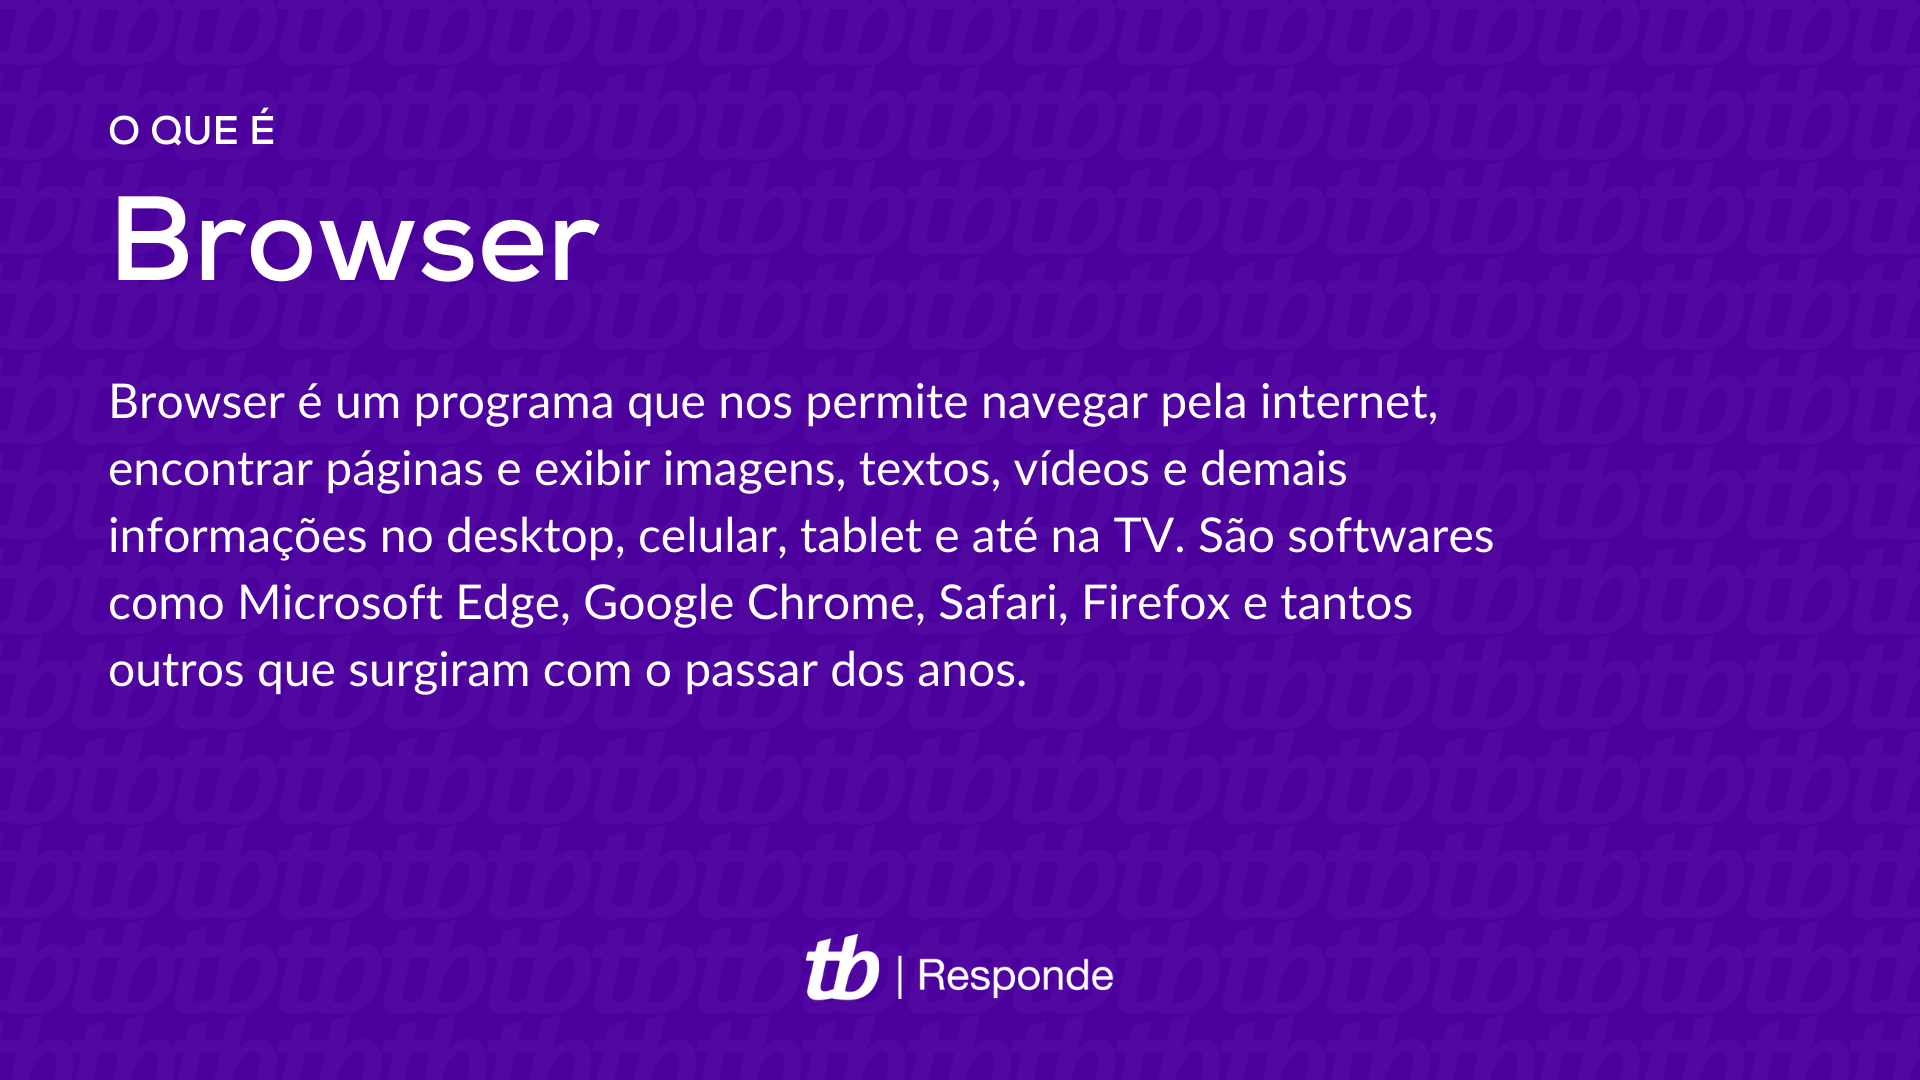 Esta é a MELHOR Dica de Celular de TODAS!!! @opera.browser #navegador